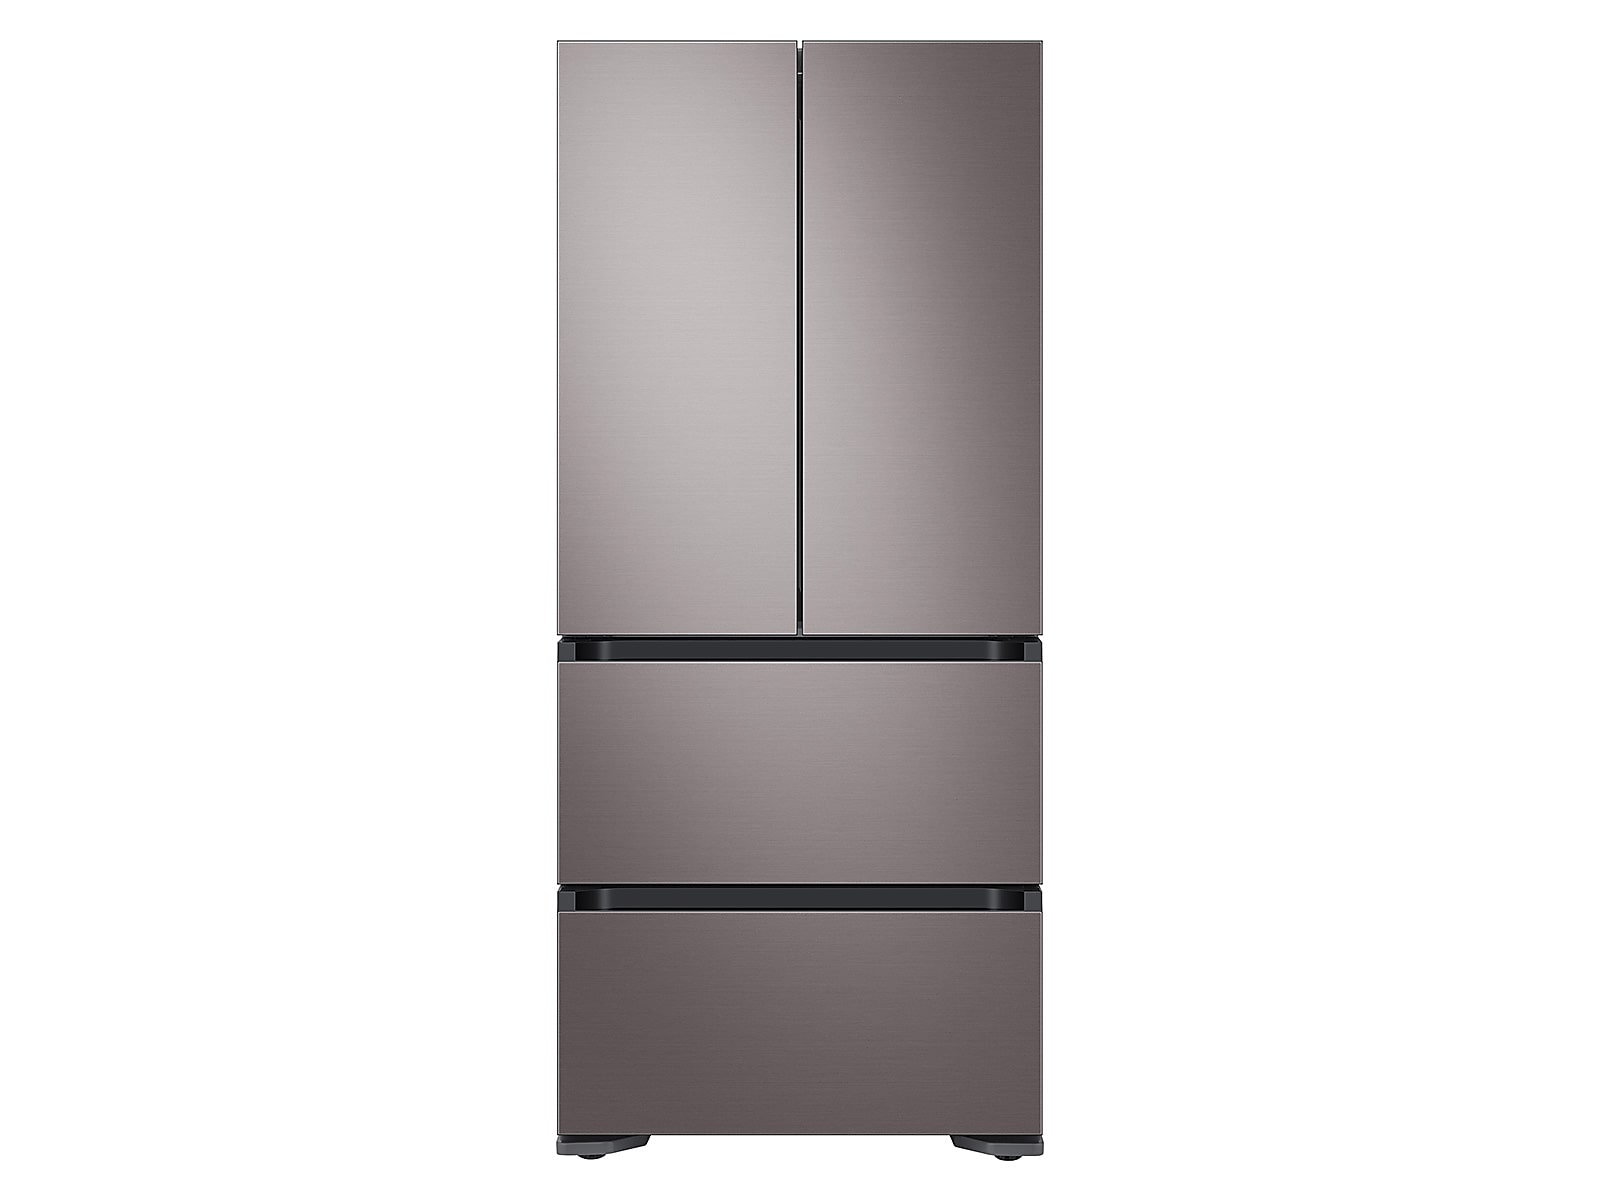 Samsung 17.3 cu. ft. Smart Kimchi & Specialty 4-Door French Door Refrigerator in Platinum Bronze(RQ48T9432T1/AA)